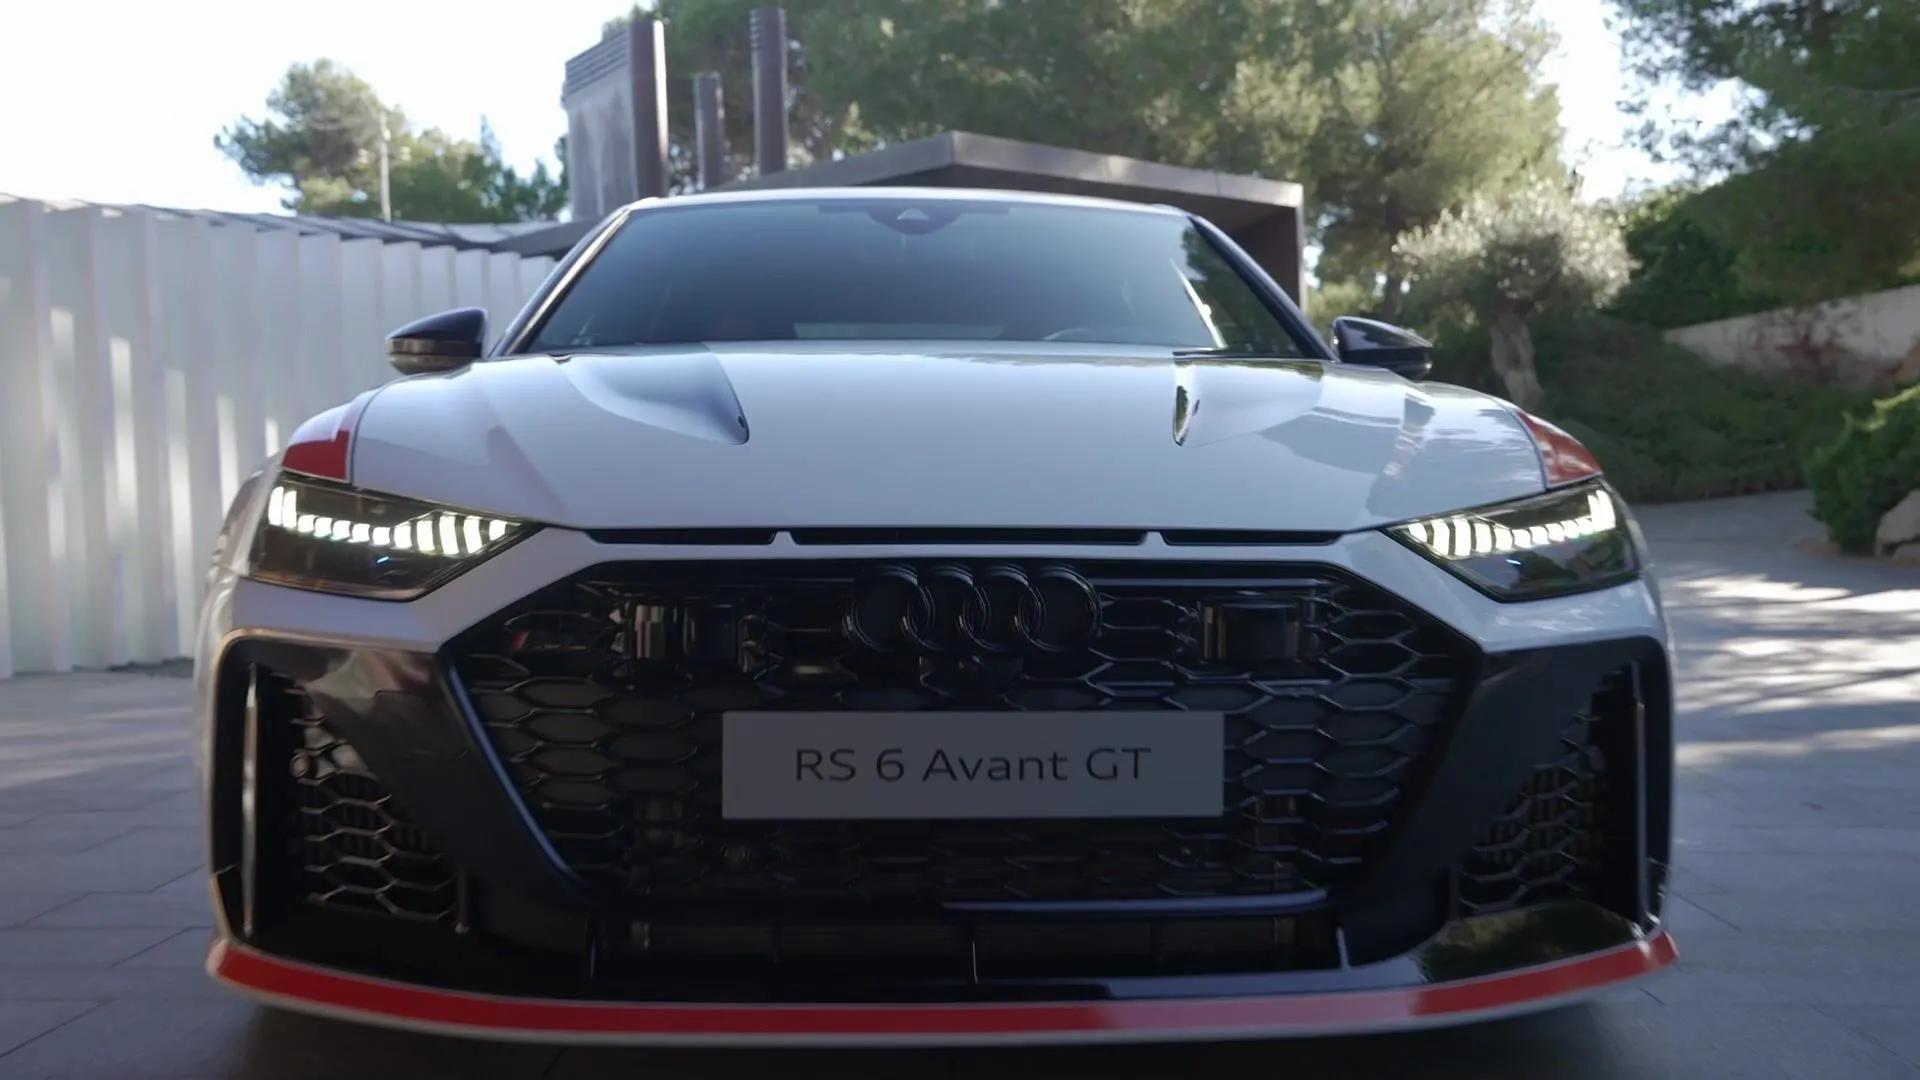 Der neue Audi RS 6 Avant GT - Performance der nächsten Stufe